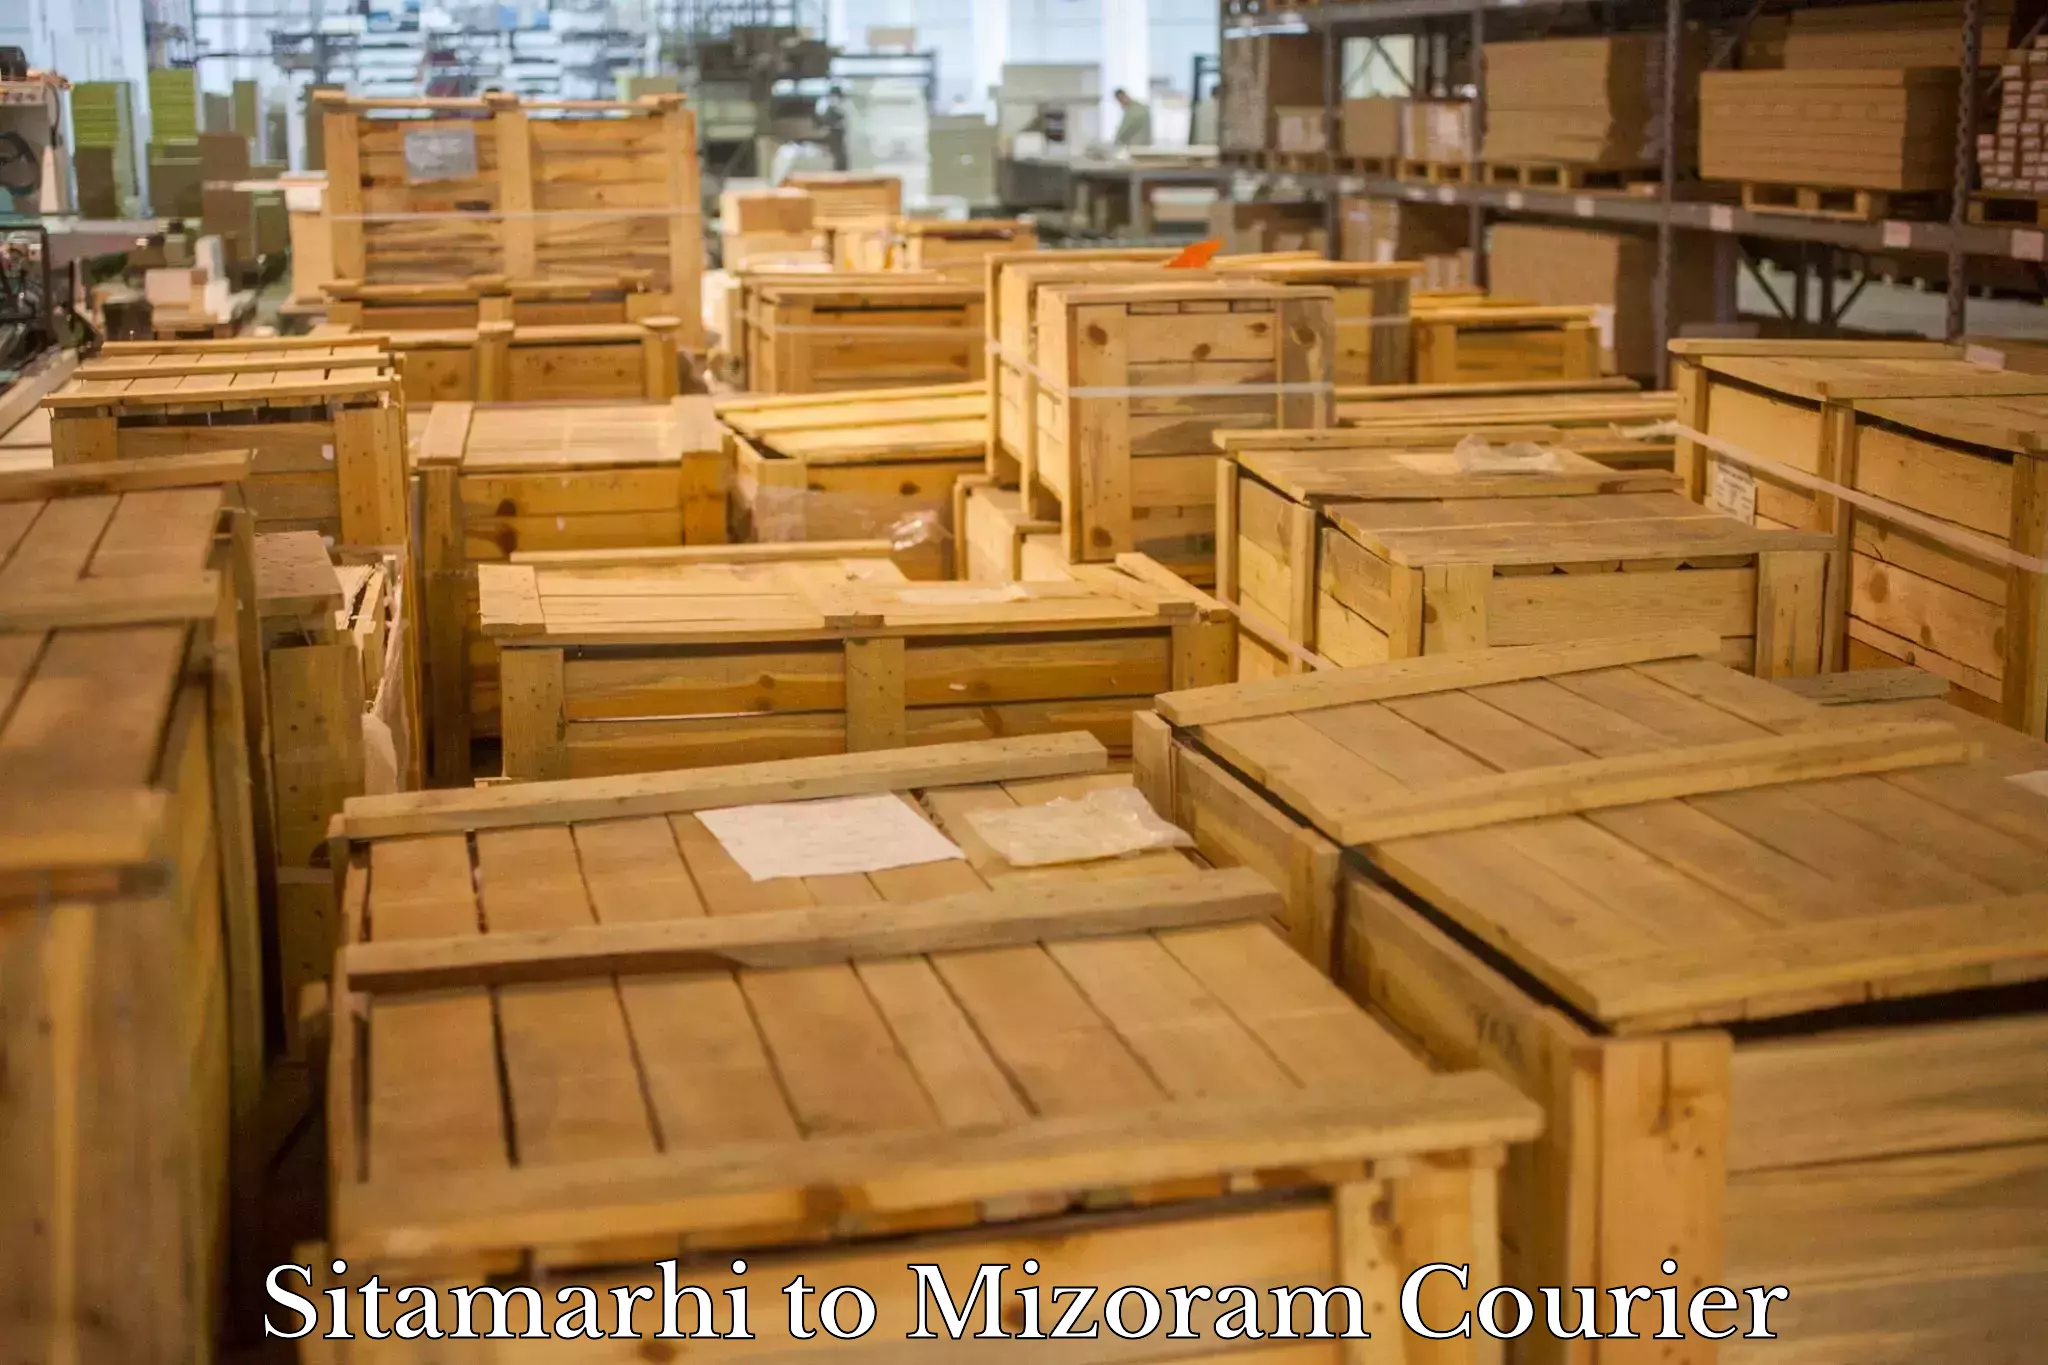 Cargo delivery service Sitamarhi to NIT Aizawl